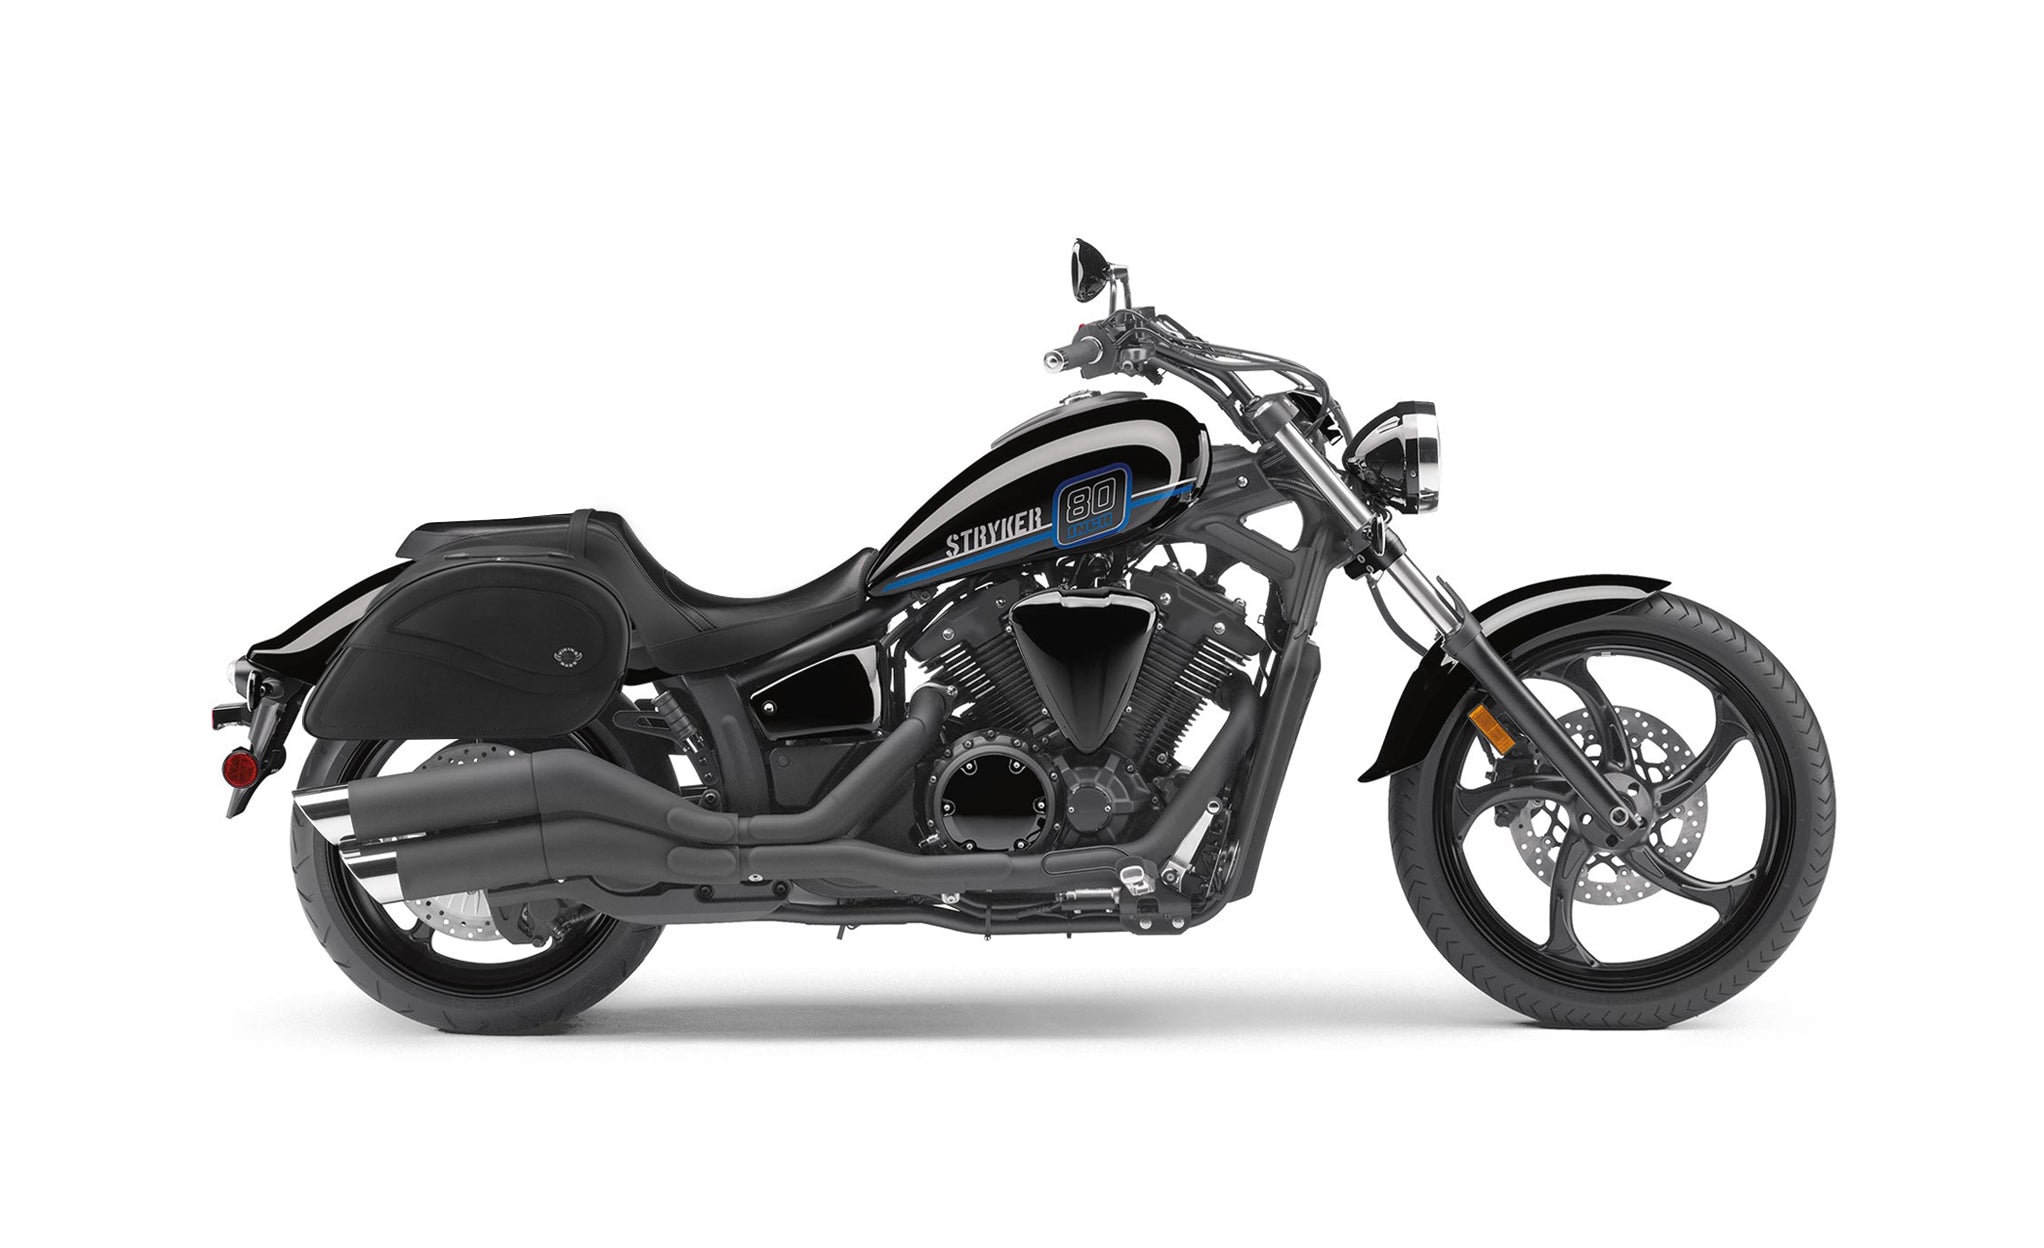 Viking Ultimate Large Yamaha Stryker Leather Motorcycle Saddlebags on Bike Photo @expand